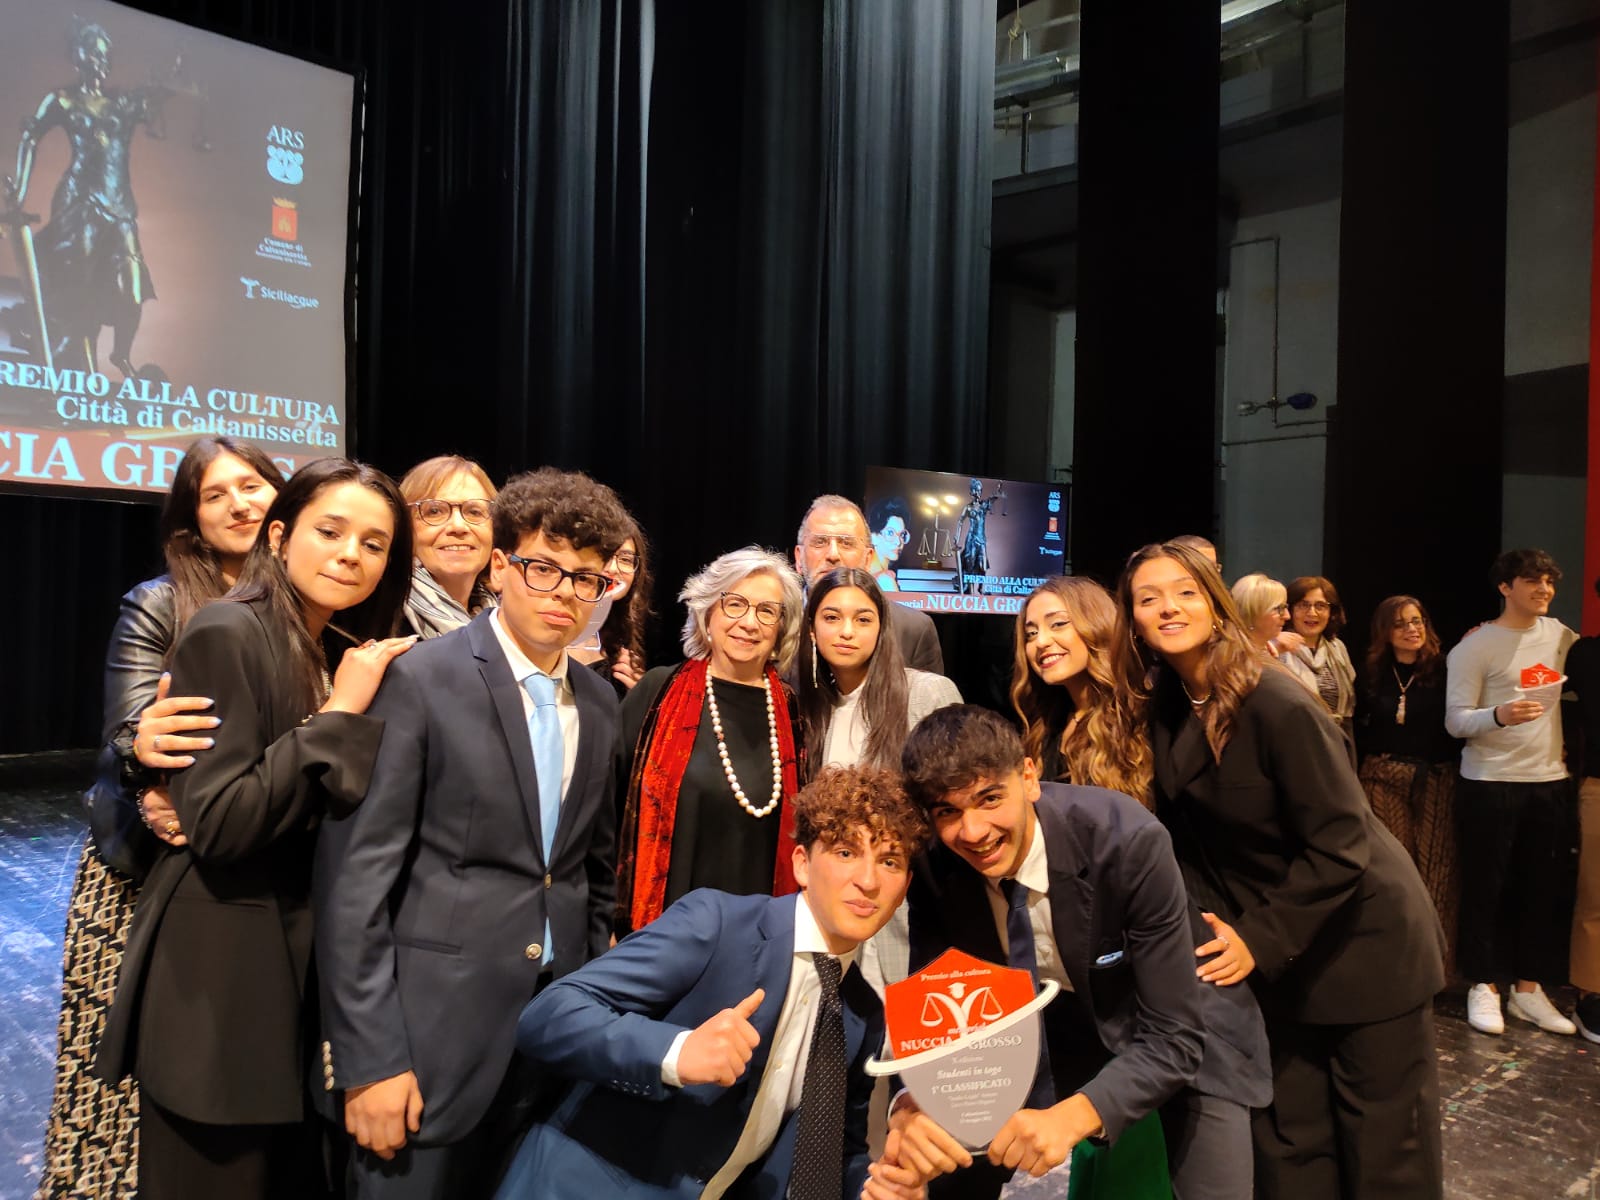 Caltanissetta. Il Liceo Classico “Pietro Mignosi” vince premio alla cultura Memorial “Nuccia Grosso”